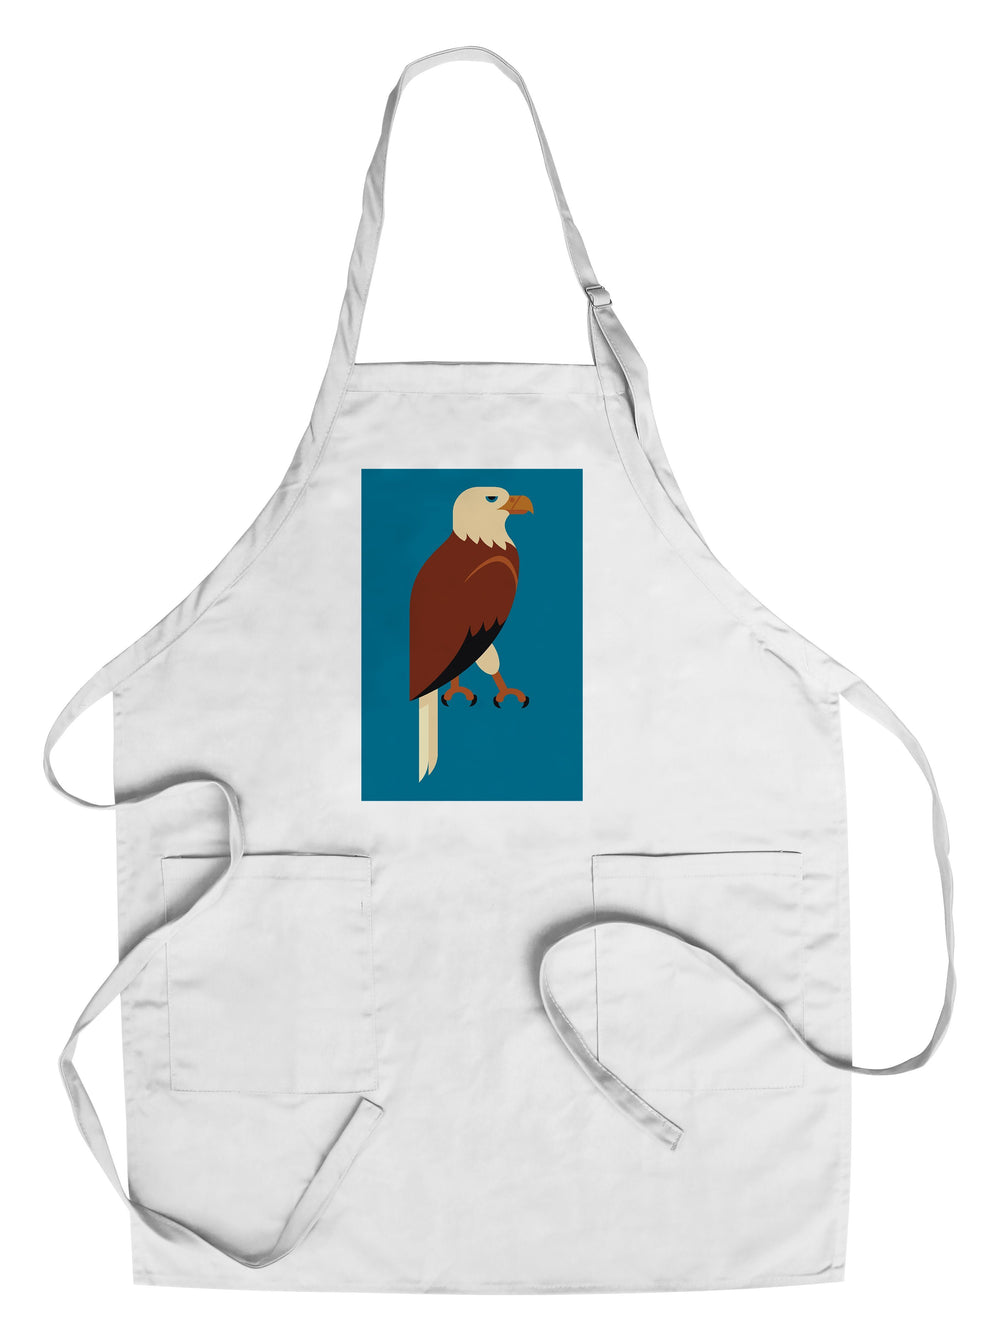 Bald Eagle, Geometric, Contour, Lantern Press Artwork, Towels and Aprons Kitchen Lantern Press 